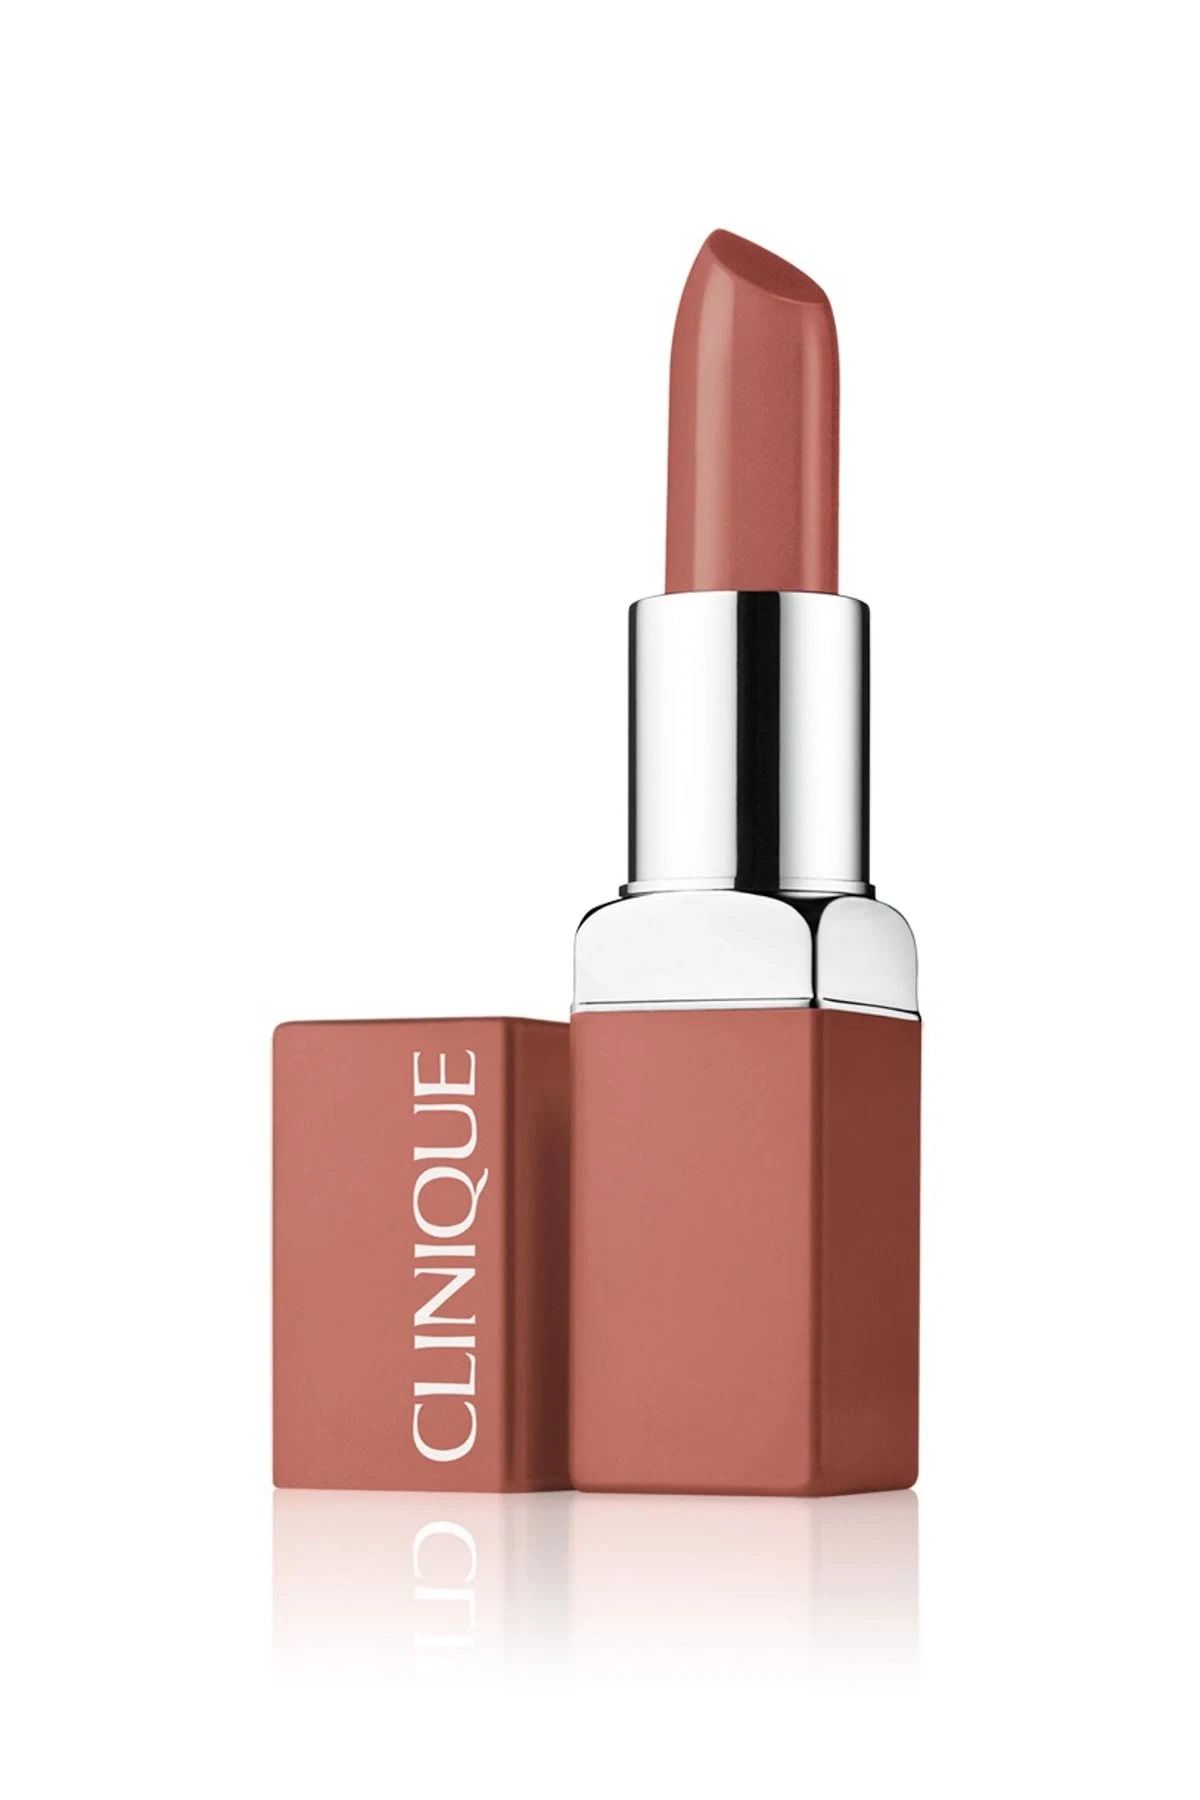 Clinique Nude Ruj - Even Better Pop Lipstick Romanced 03 192333012307